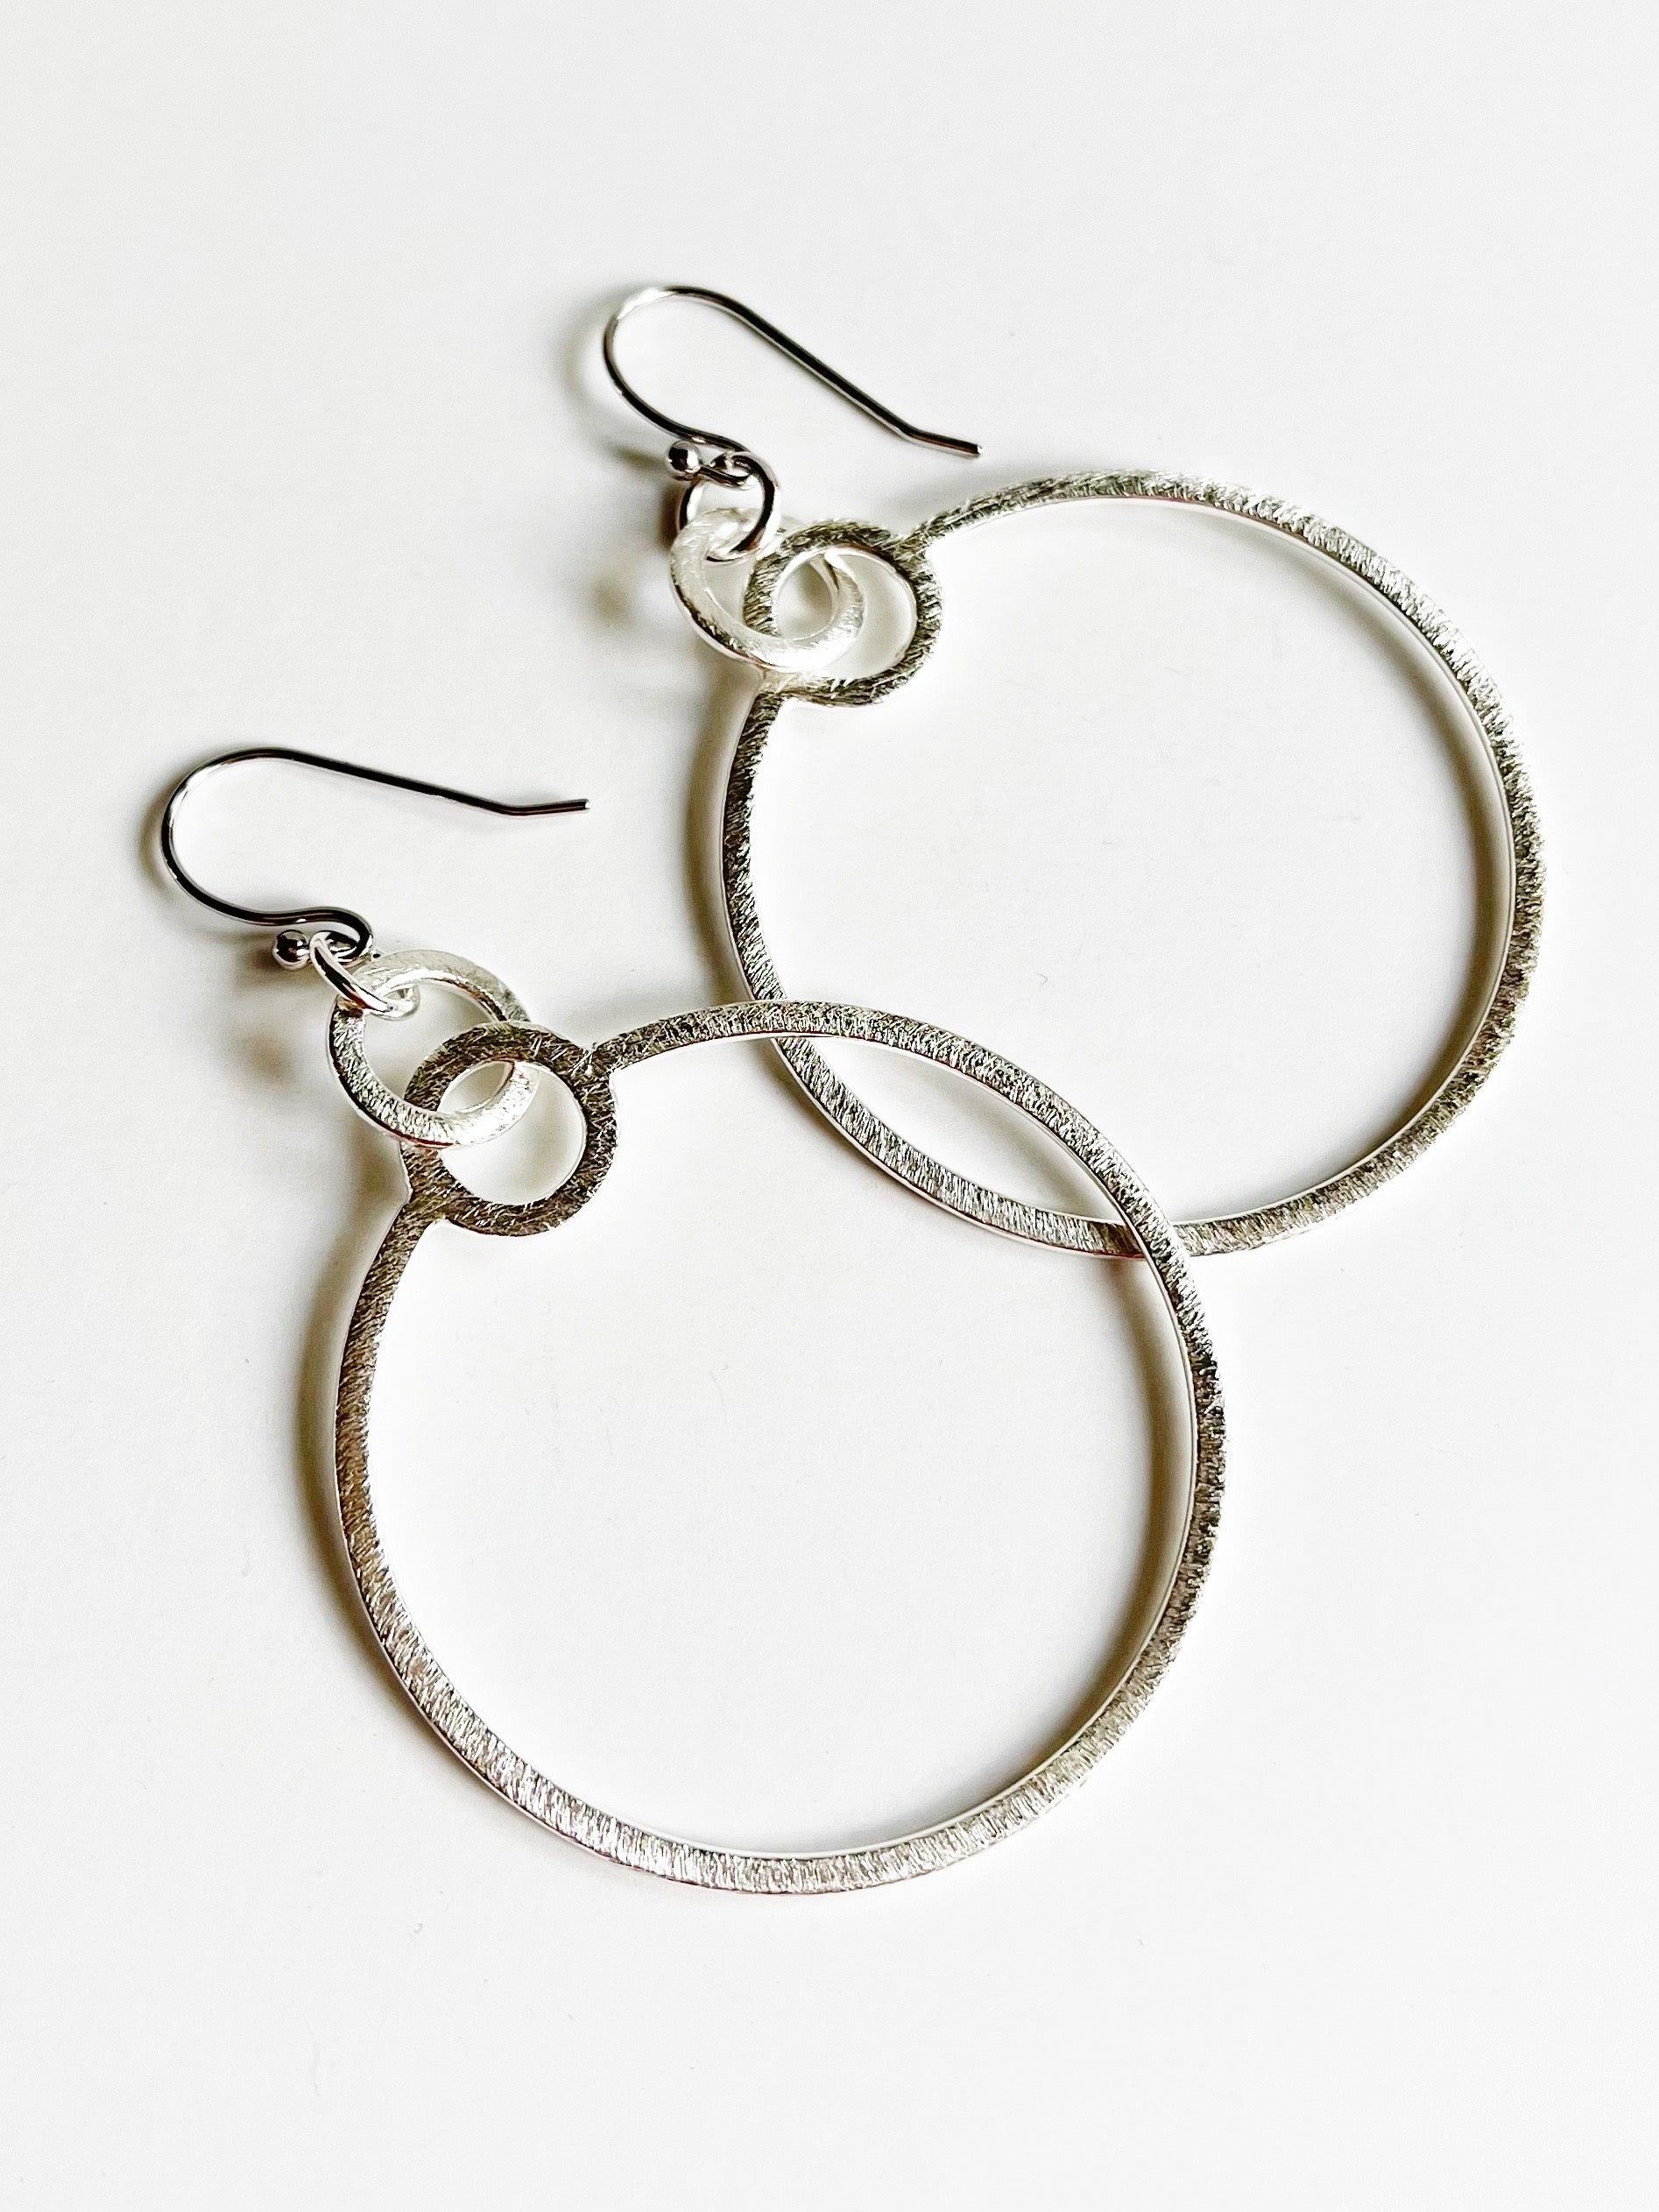 silver-hoop-earrings